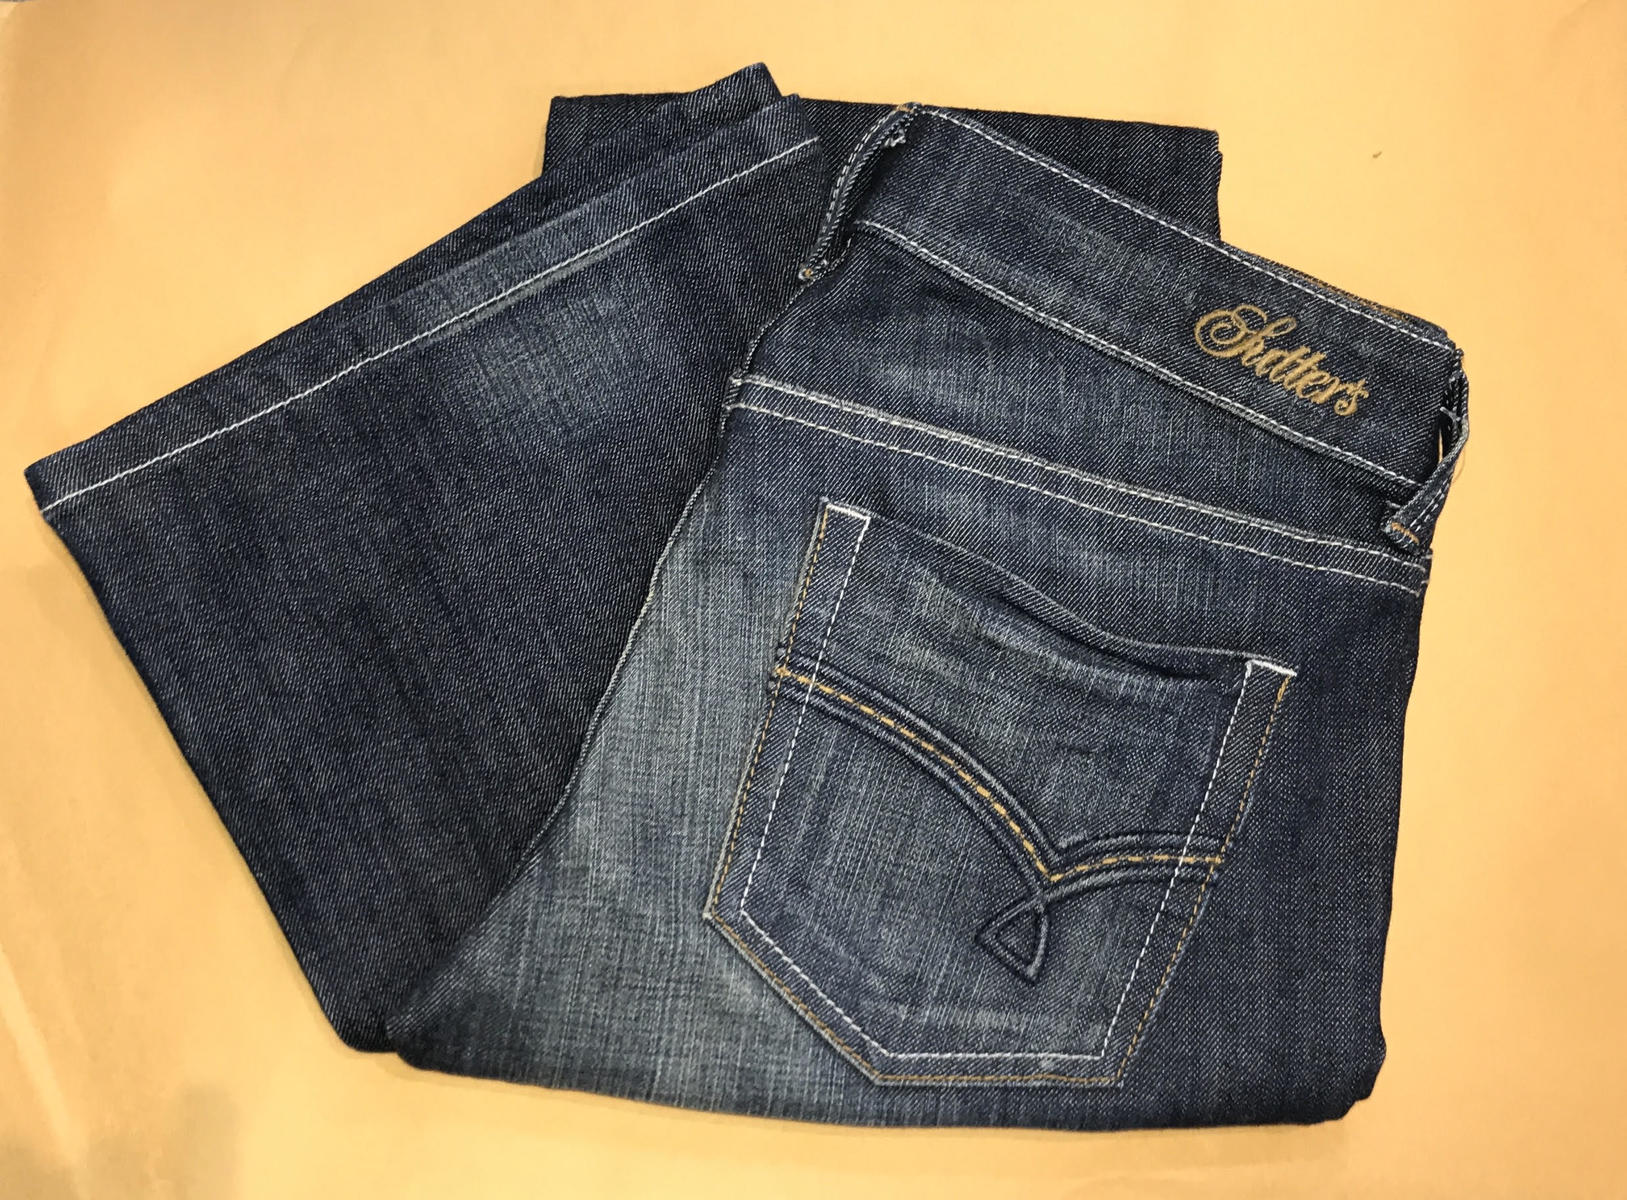 SUTTER'S Jeans Dust Blue Wash Boot Cut 9460